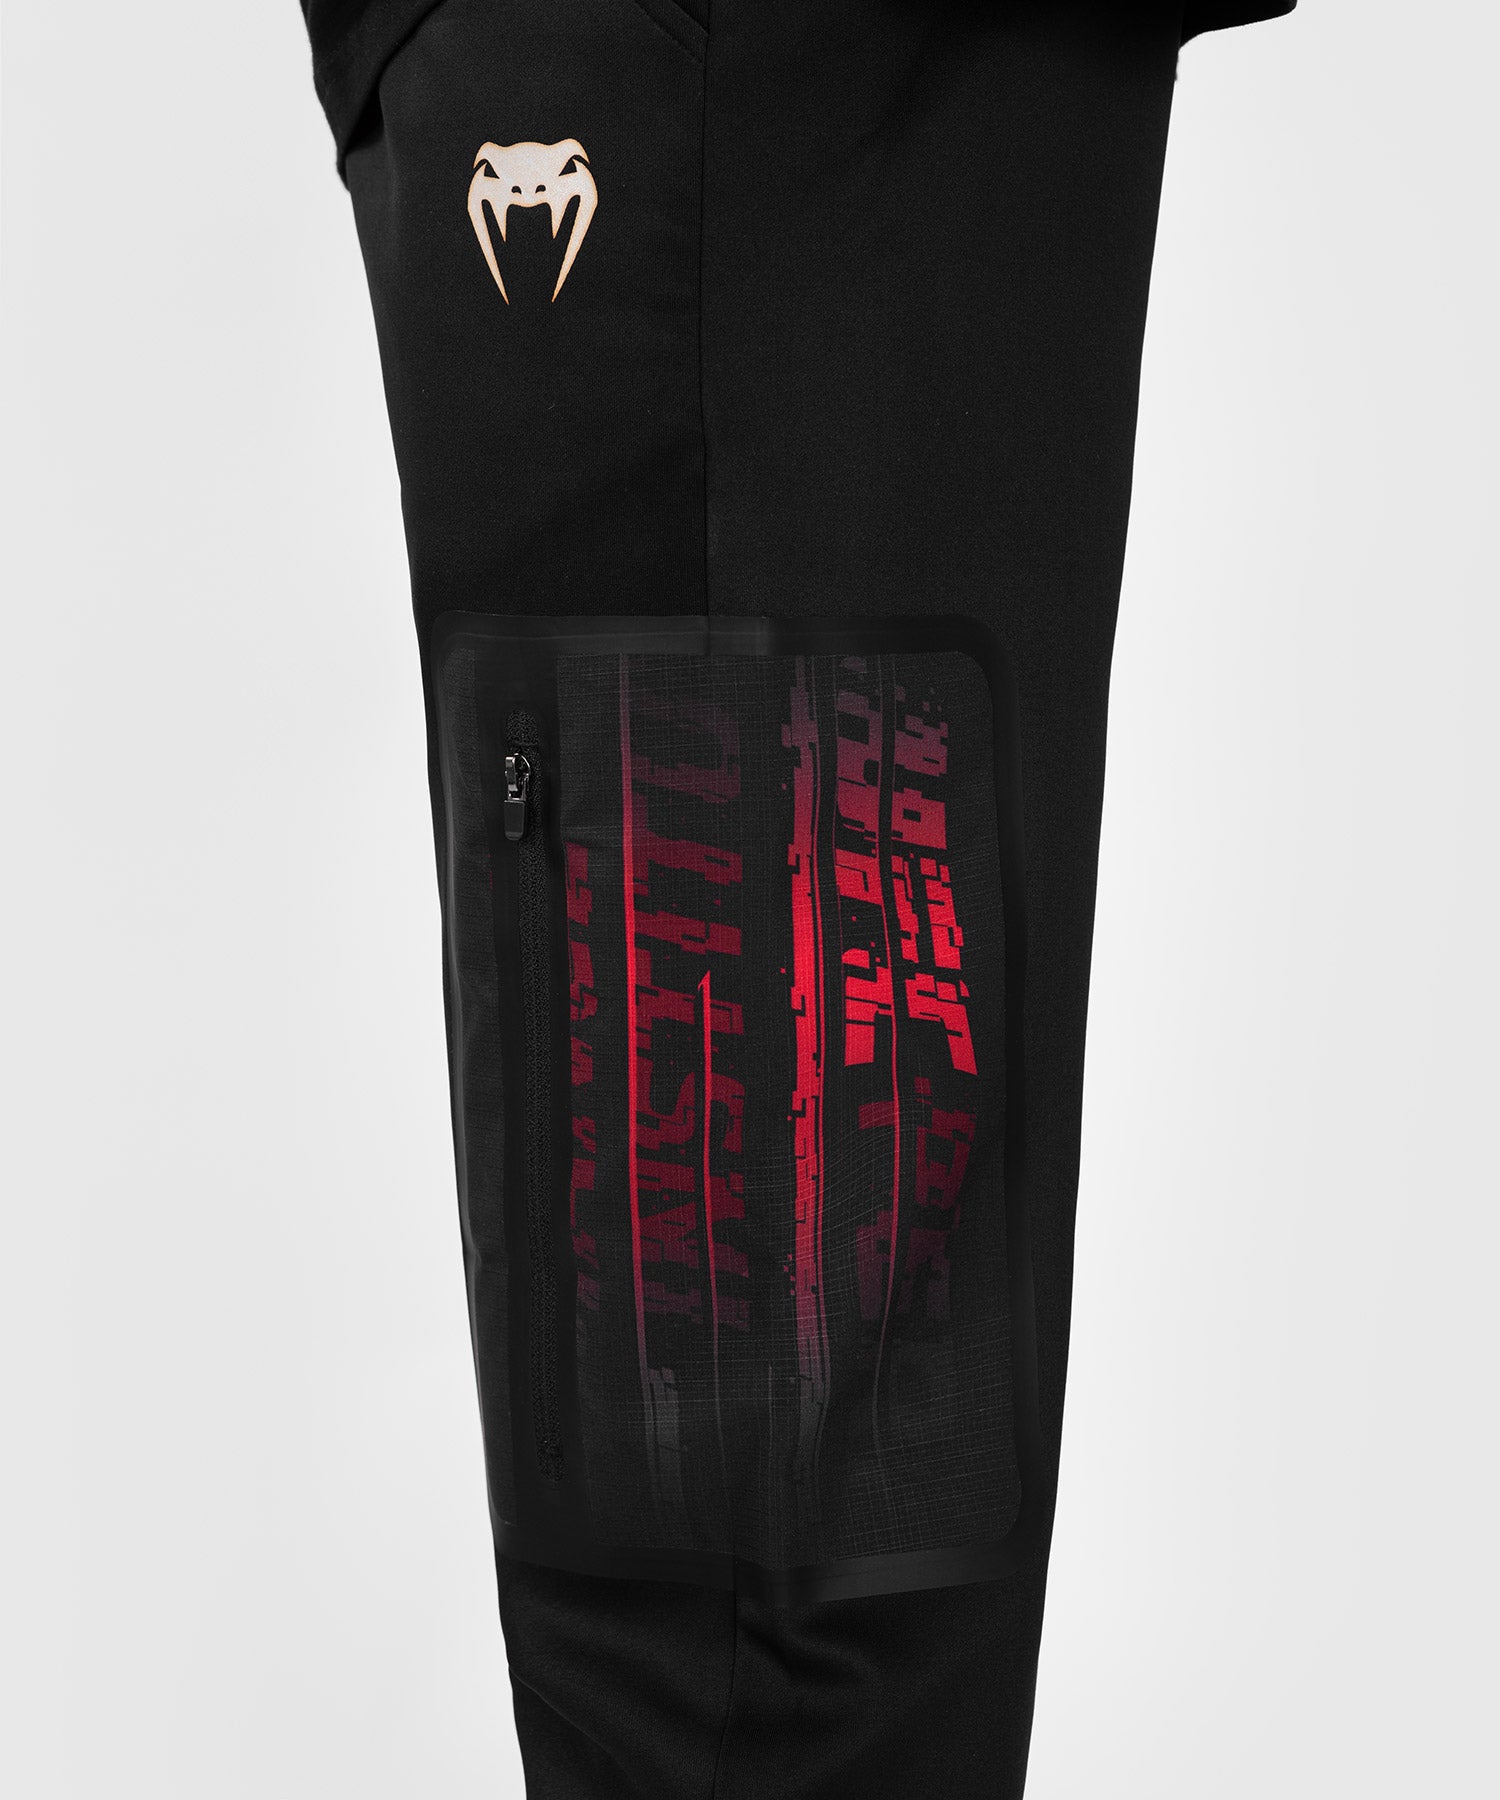 Pantalones cortos de alto rendimiento para hombre UFC X Venum Performance  Institute2.0 - negro / rojo > Envío Gratis